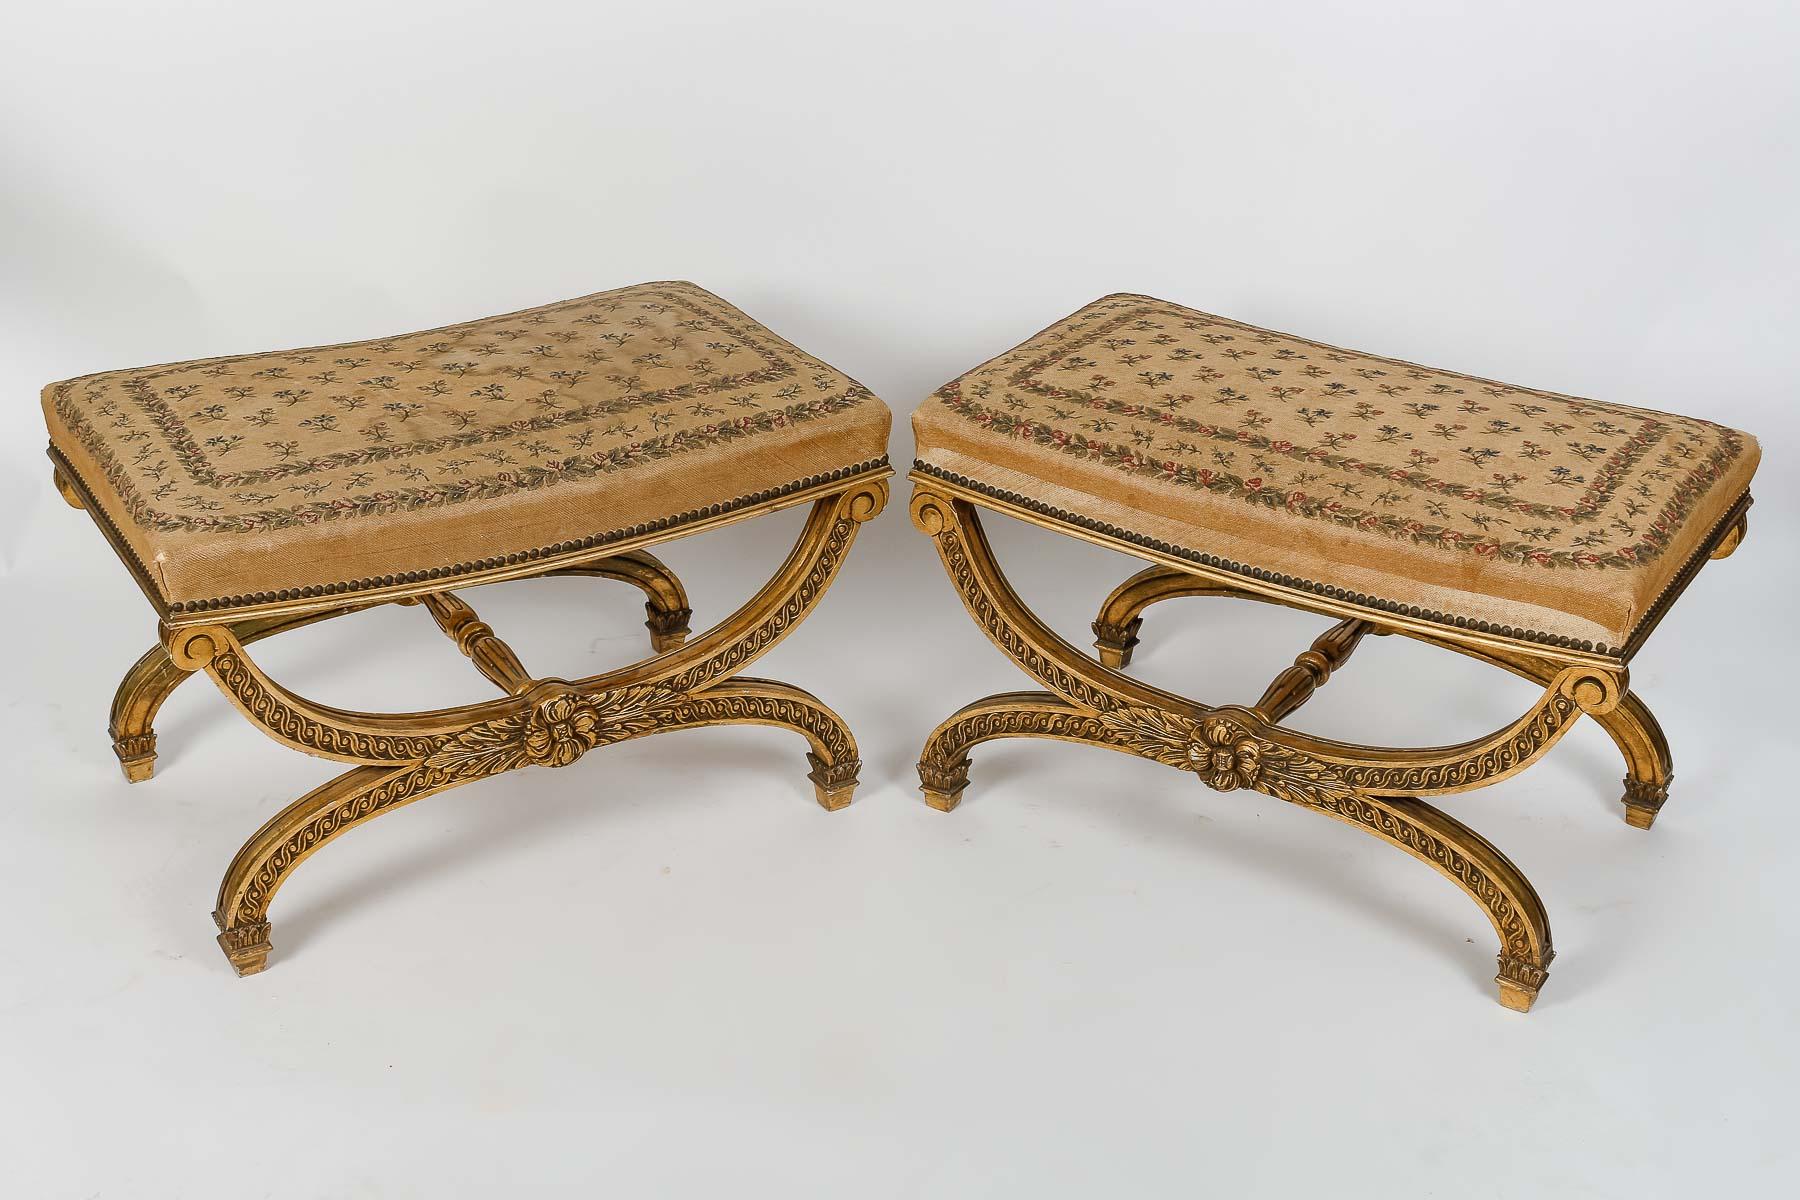 Ein französisches Paar großer, rechteckiger Curule-Hocker aus dem 19. 
Vergoldetes und geschnitztes Holz, verziert mit Flechtfries, Akanthusblättern und Rosetten
Die 4 Füße sind durch eine gadronierte Bahre verbunden.
Louis XVI-Stil 
Zeitraum